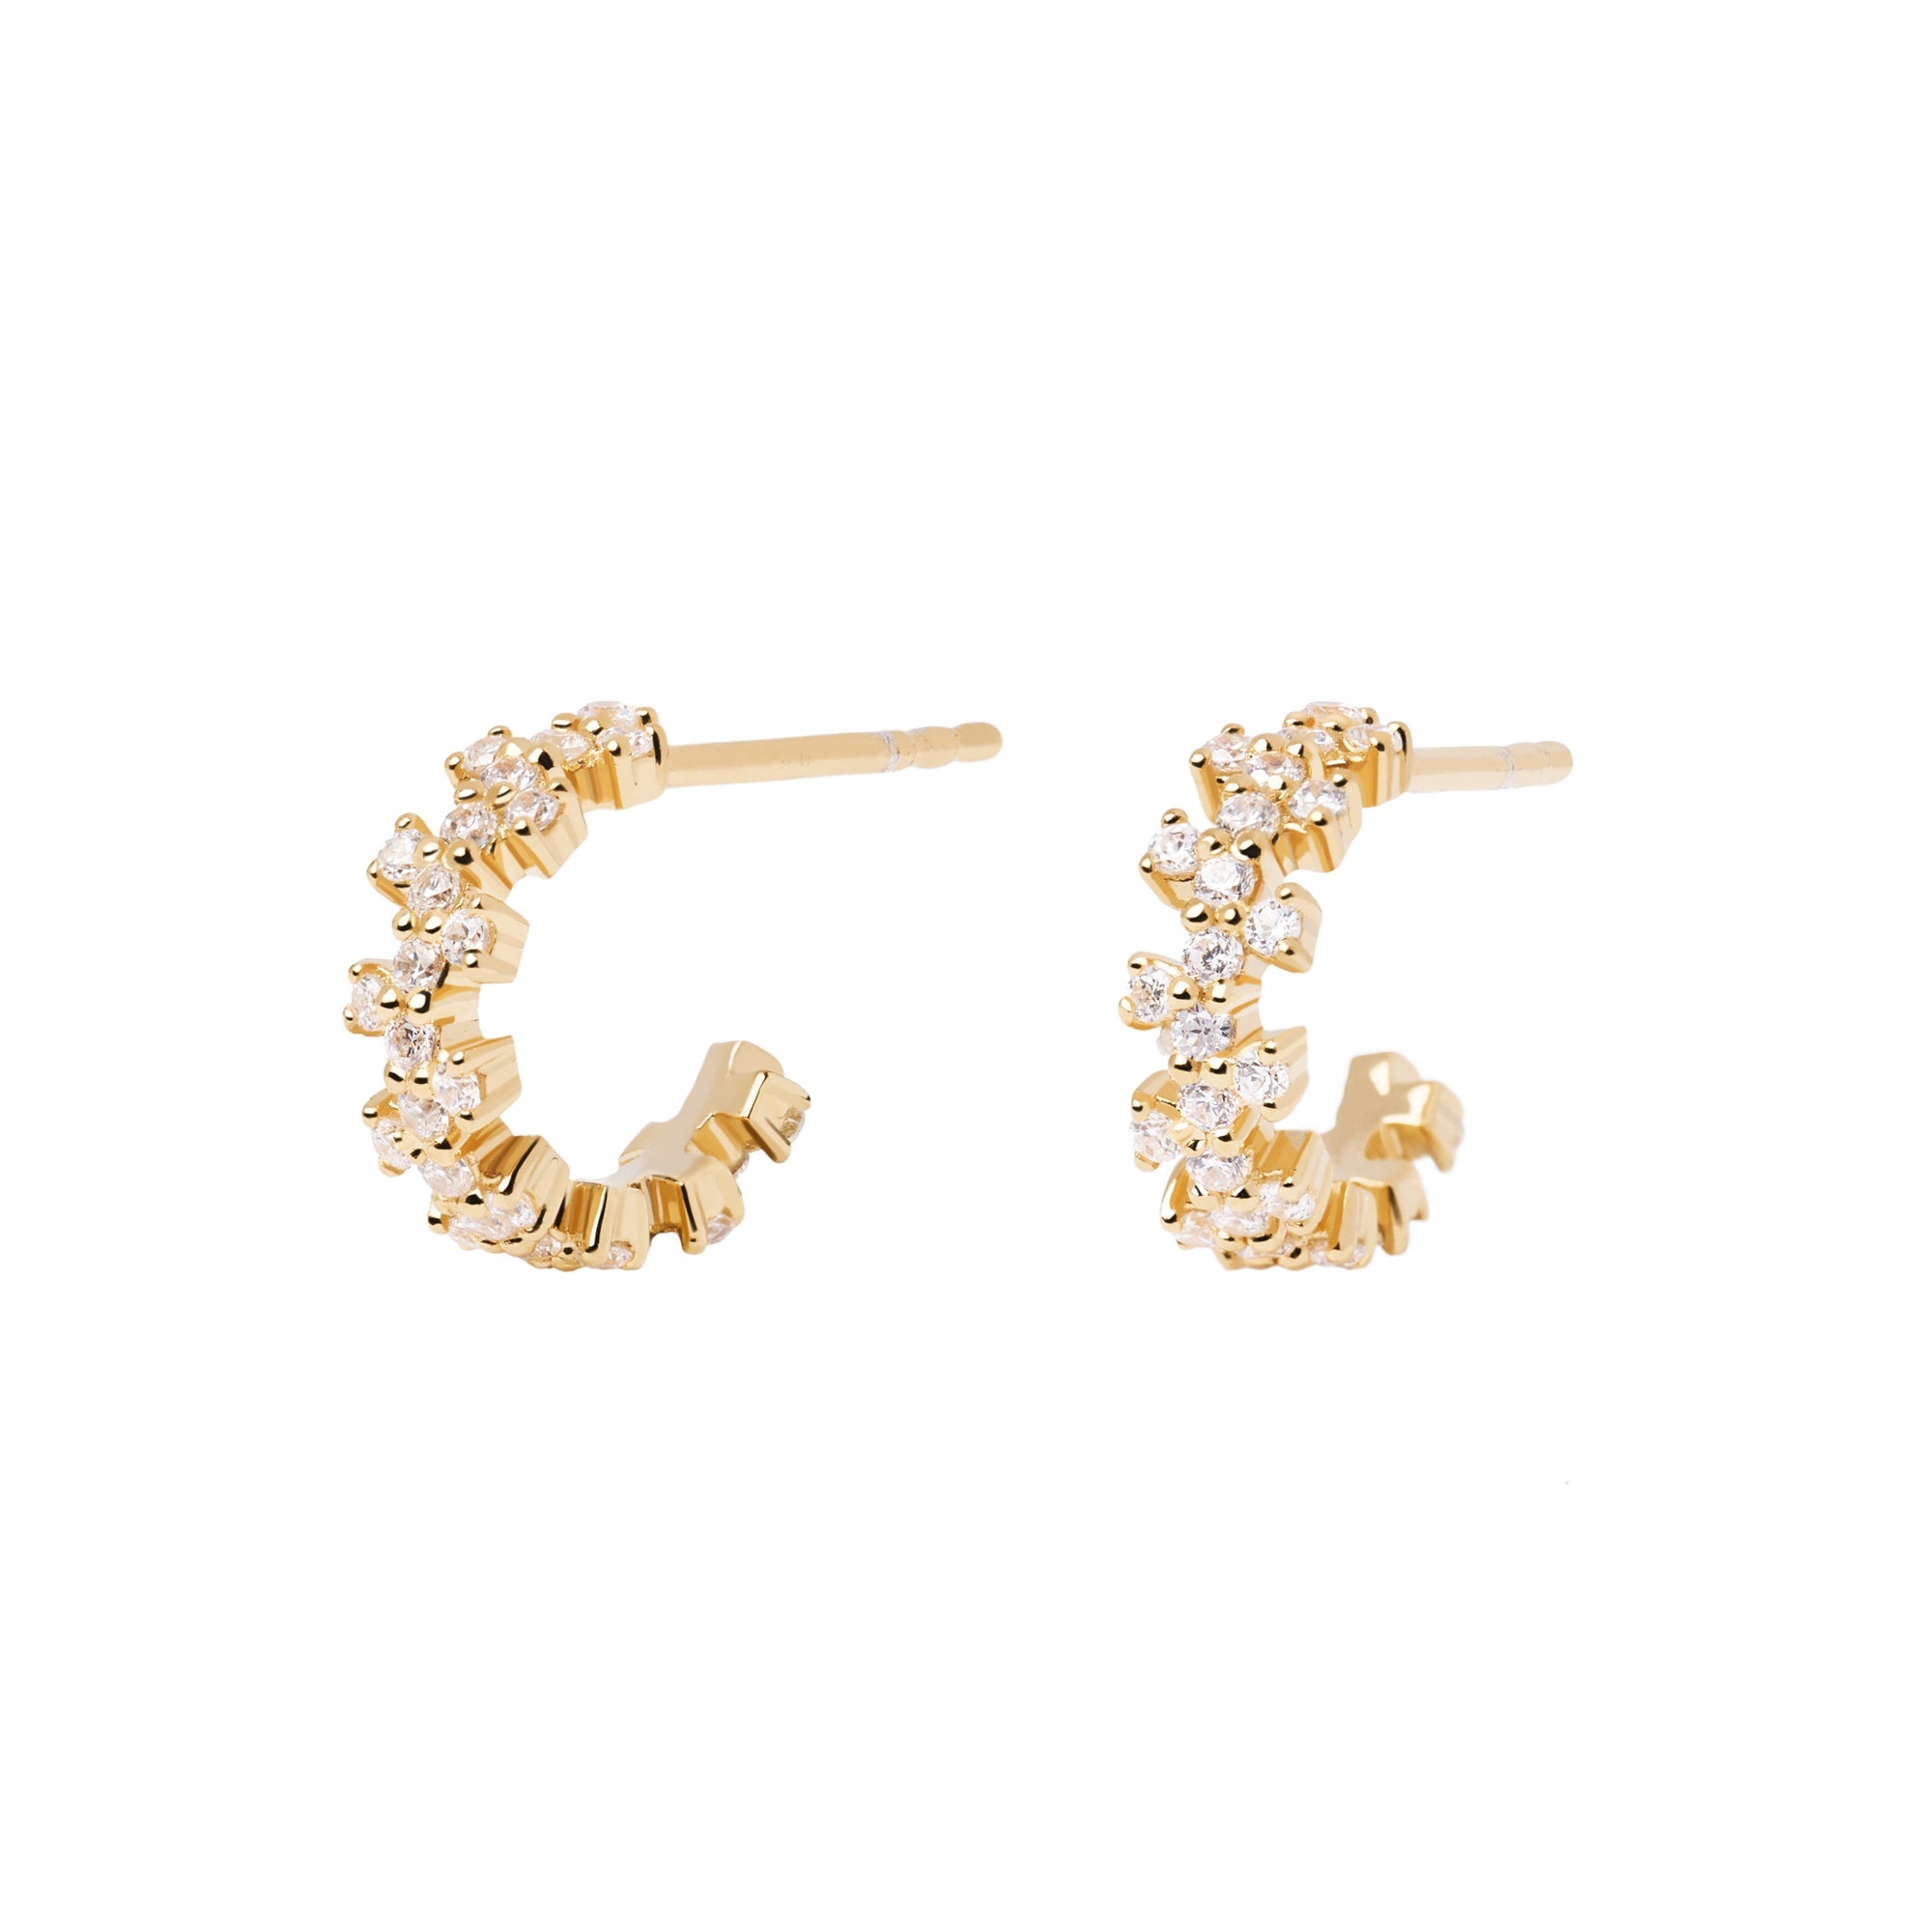 Little Crown Gold Earrings